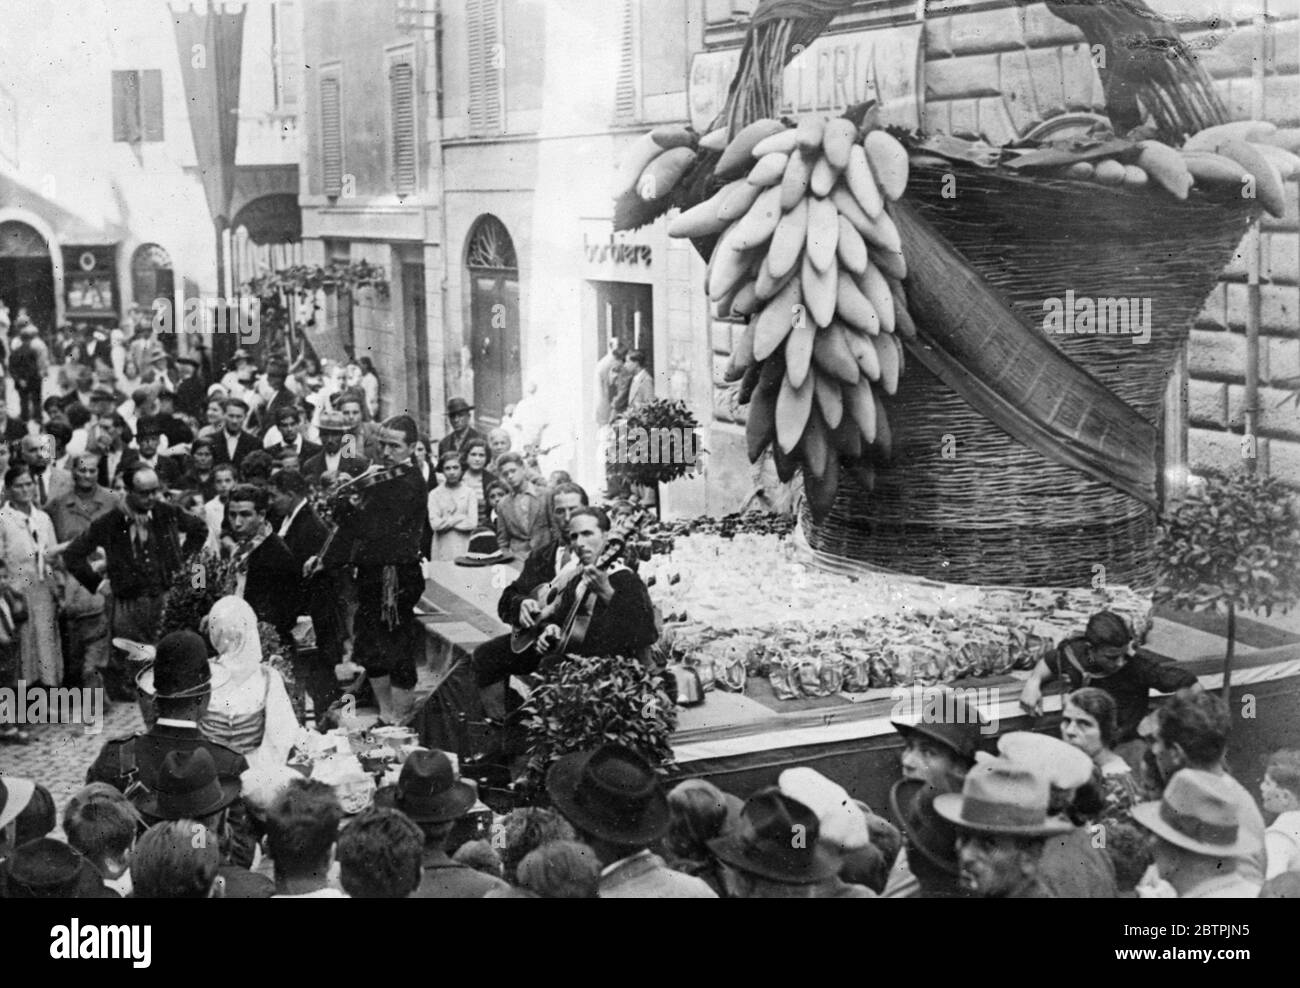 Traubenfest im Tivoli . Das traditionelle Weinfest wurde in Tivoli, in Italien gefeiert. Das Foto zeigt Musiker, die während des Festivals in einer Straße in Tivoli vor einem riesigen Korb von Trauben spielen. September 1934 Stockfoto